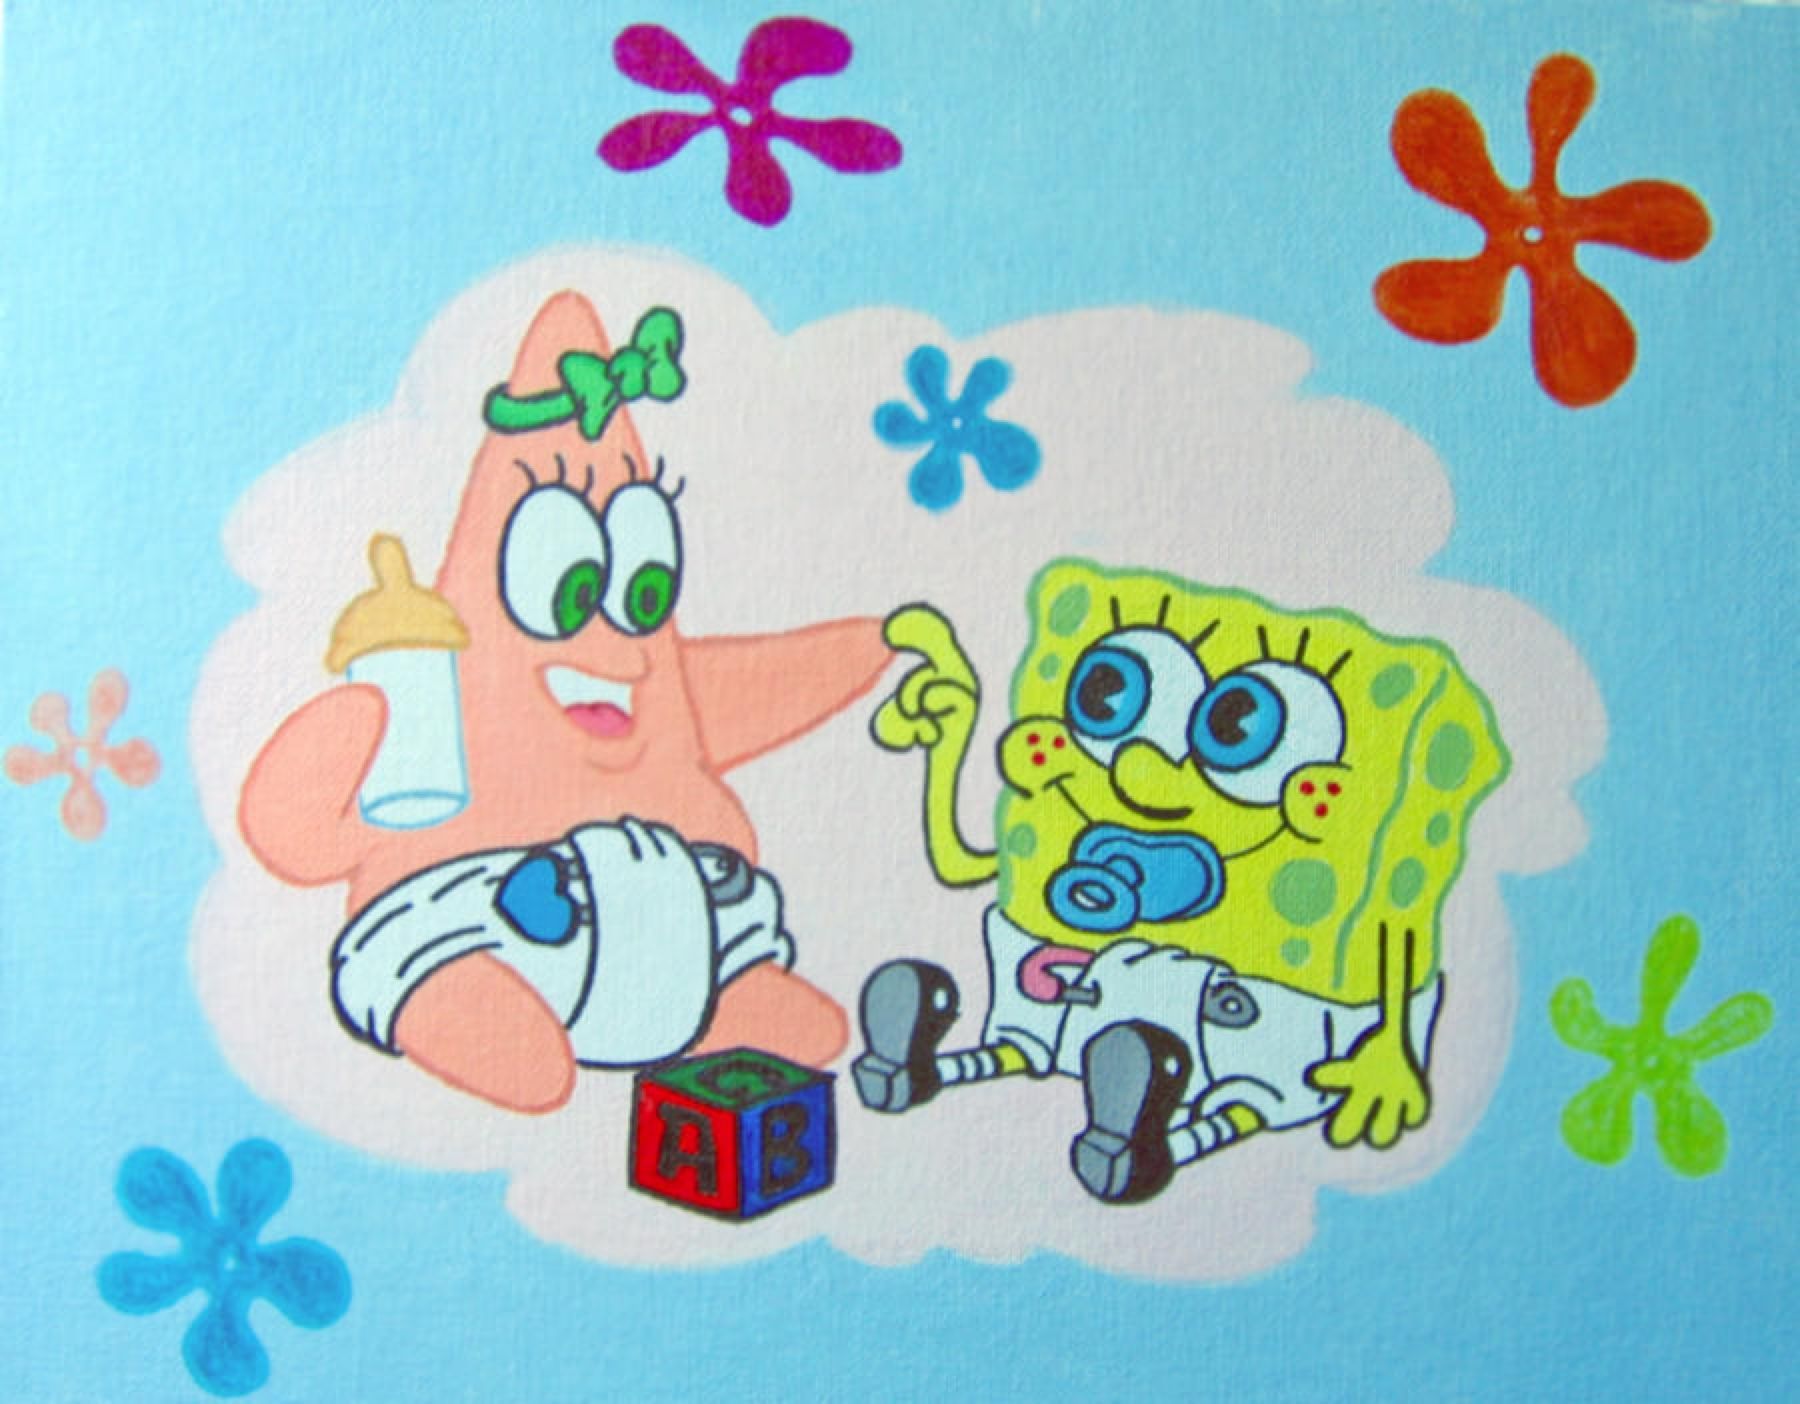 Baby Spongebob and Patrick. Spongebob painting, Spongebob wallpaper, Spongebob